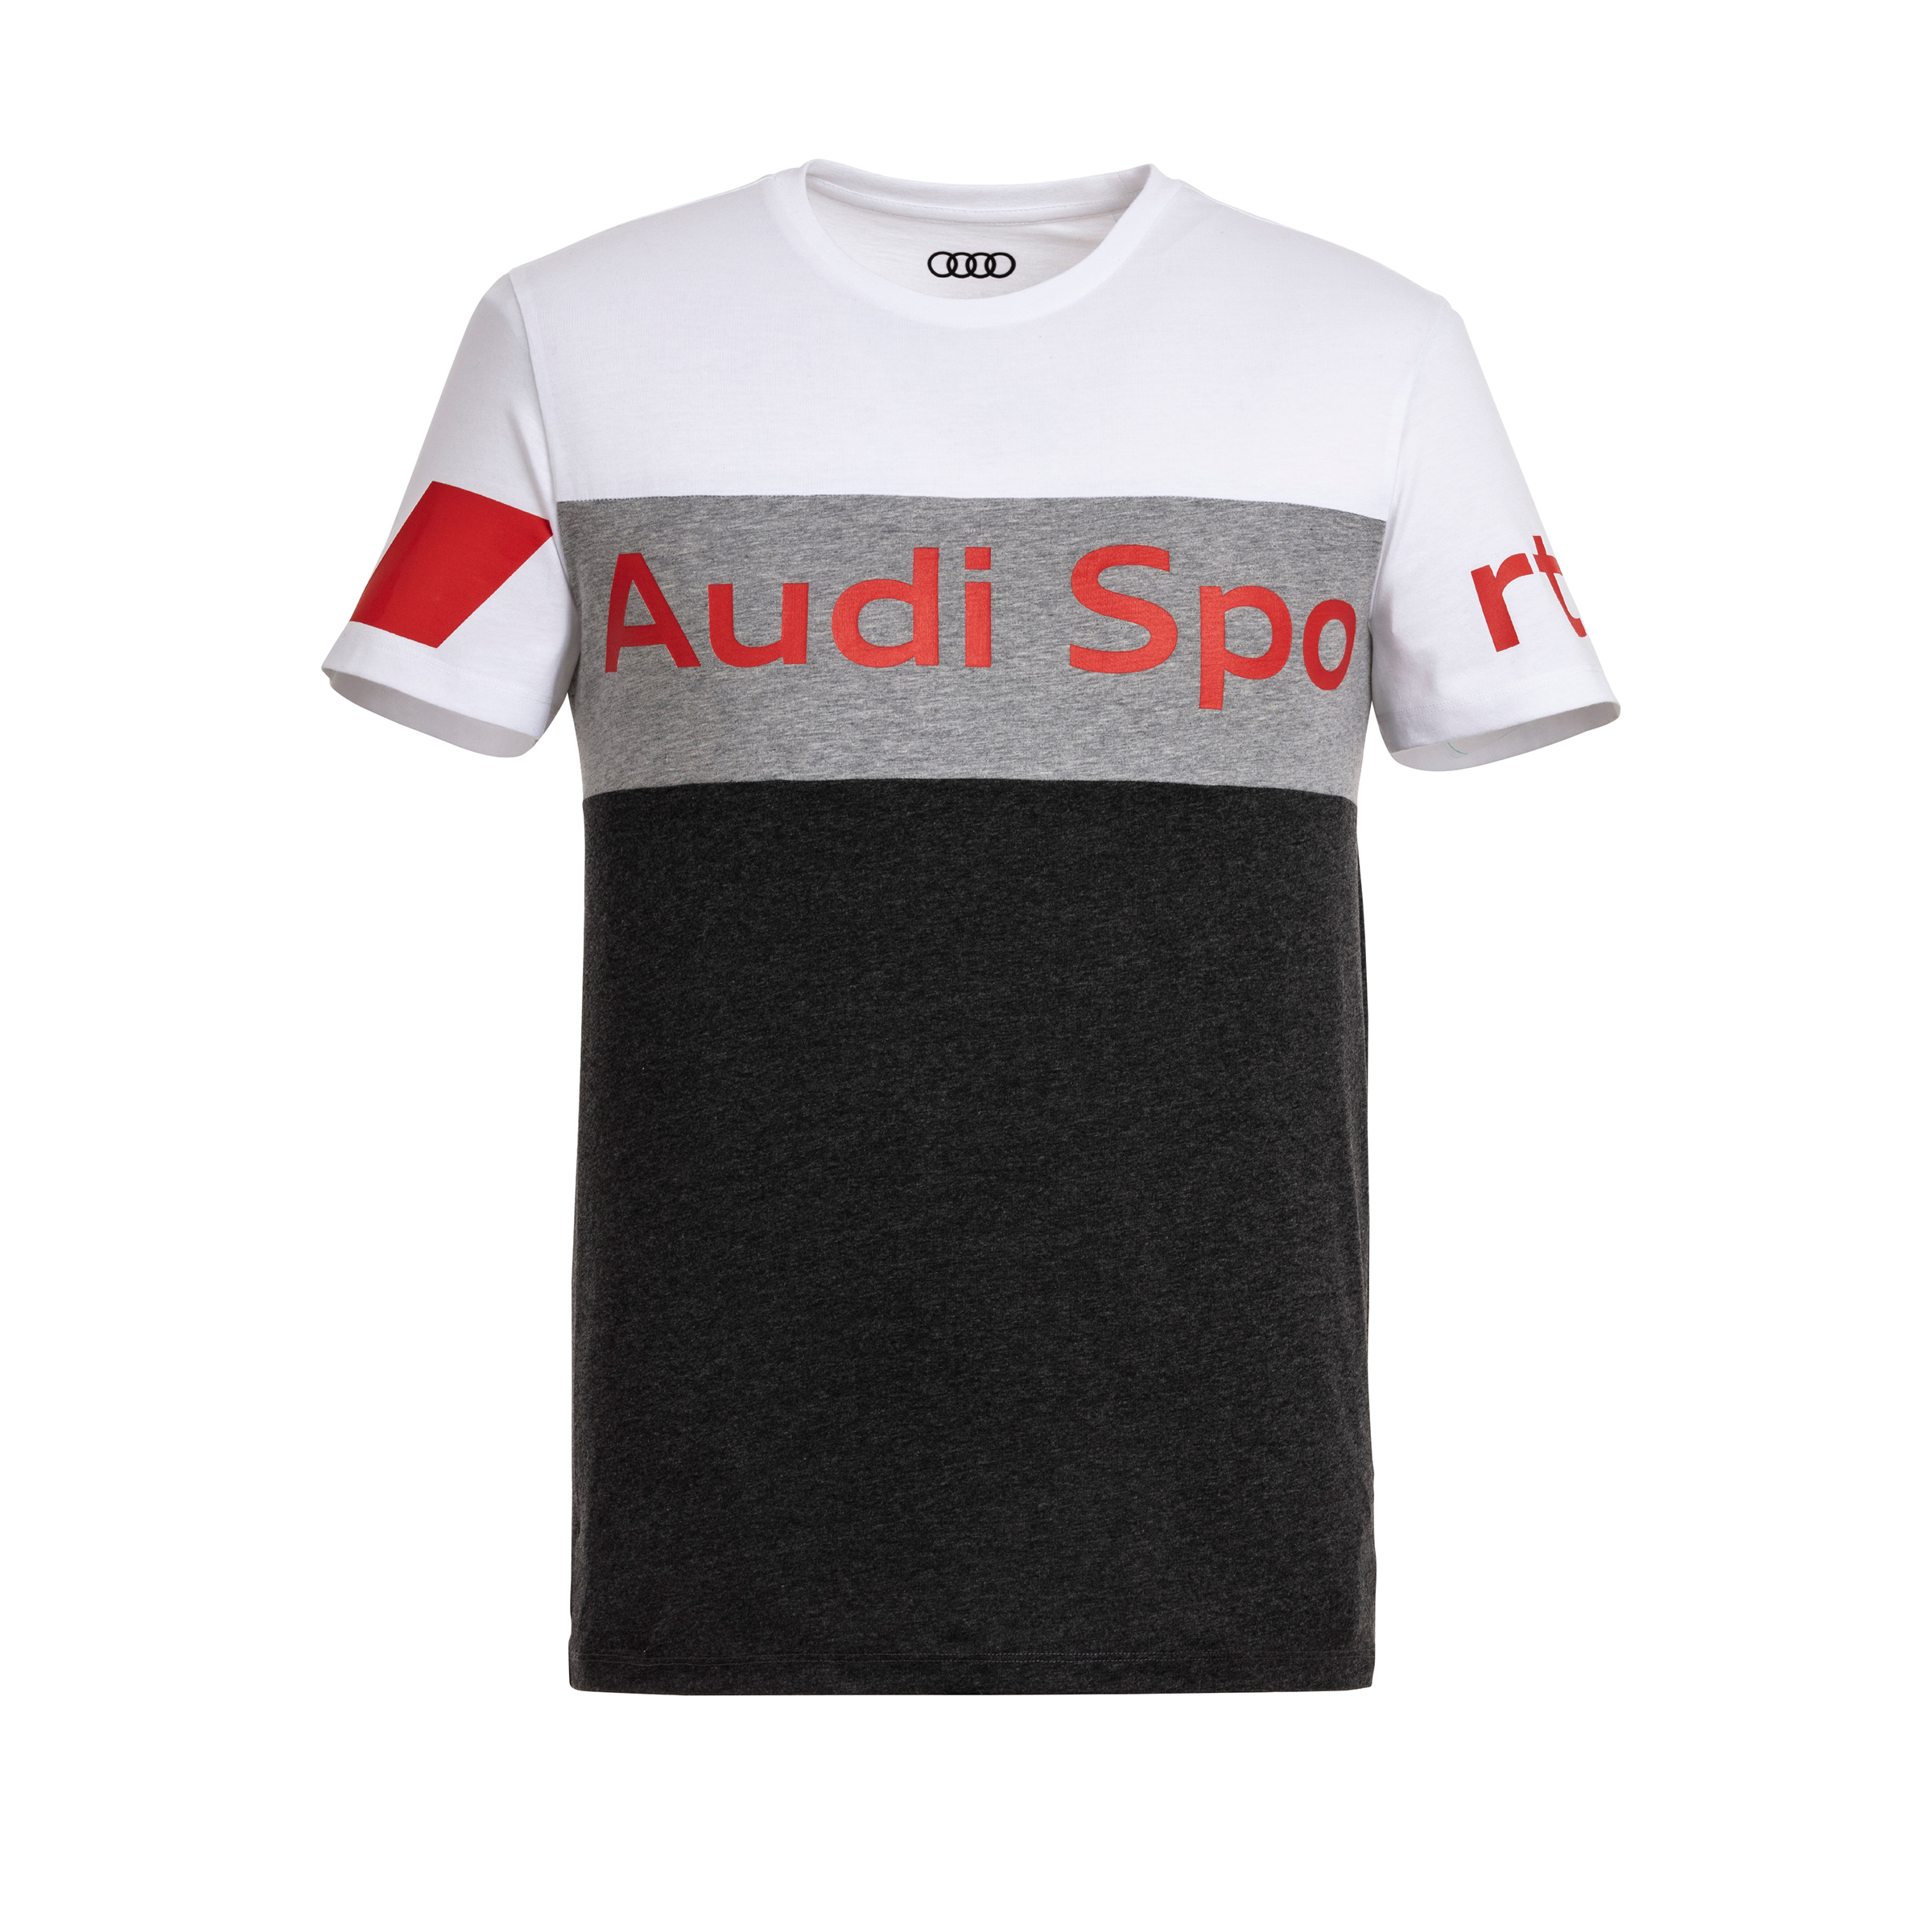 Audi Sport T-Shirt Herren grau/weiß Größe XL 3132001605